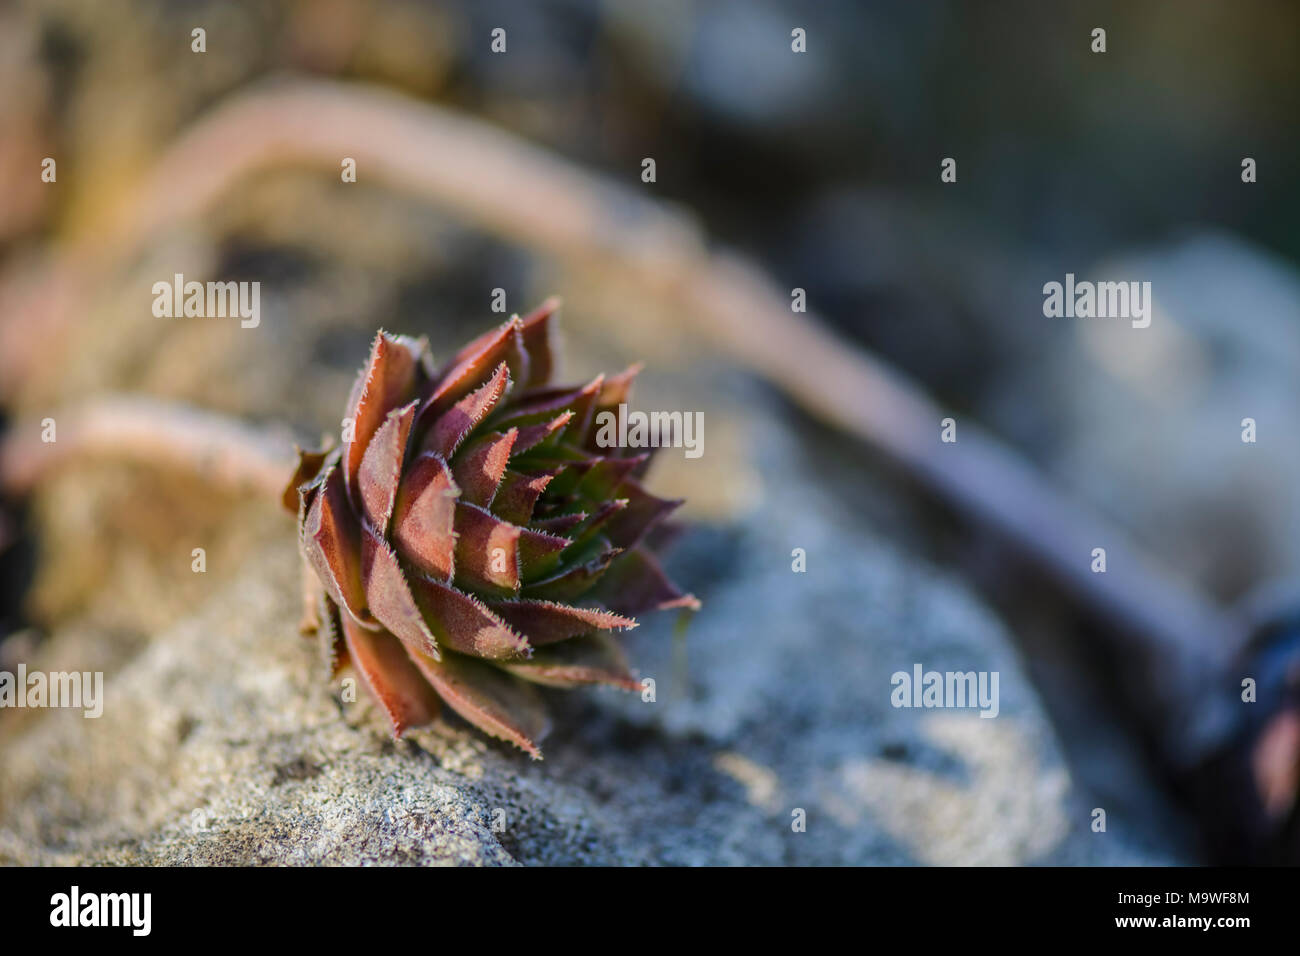 succulent plant Sempervivum against a blurry background Stock Photo